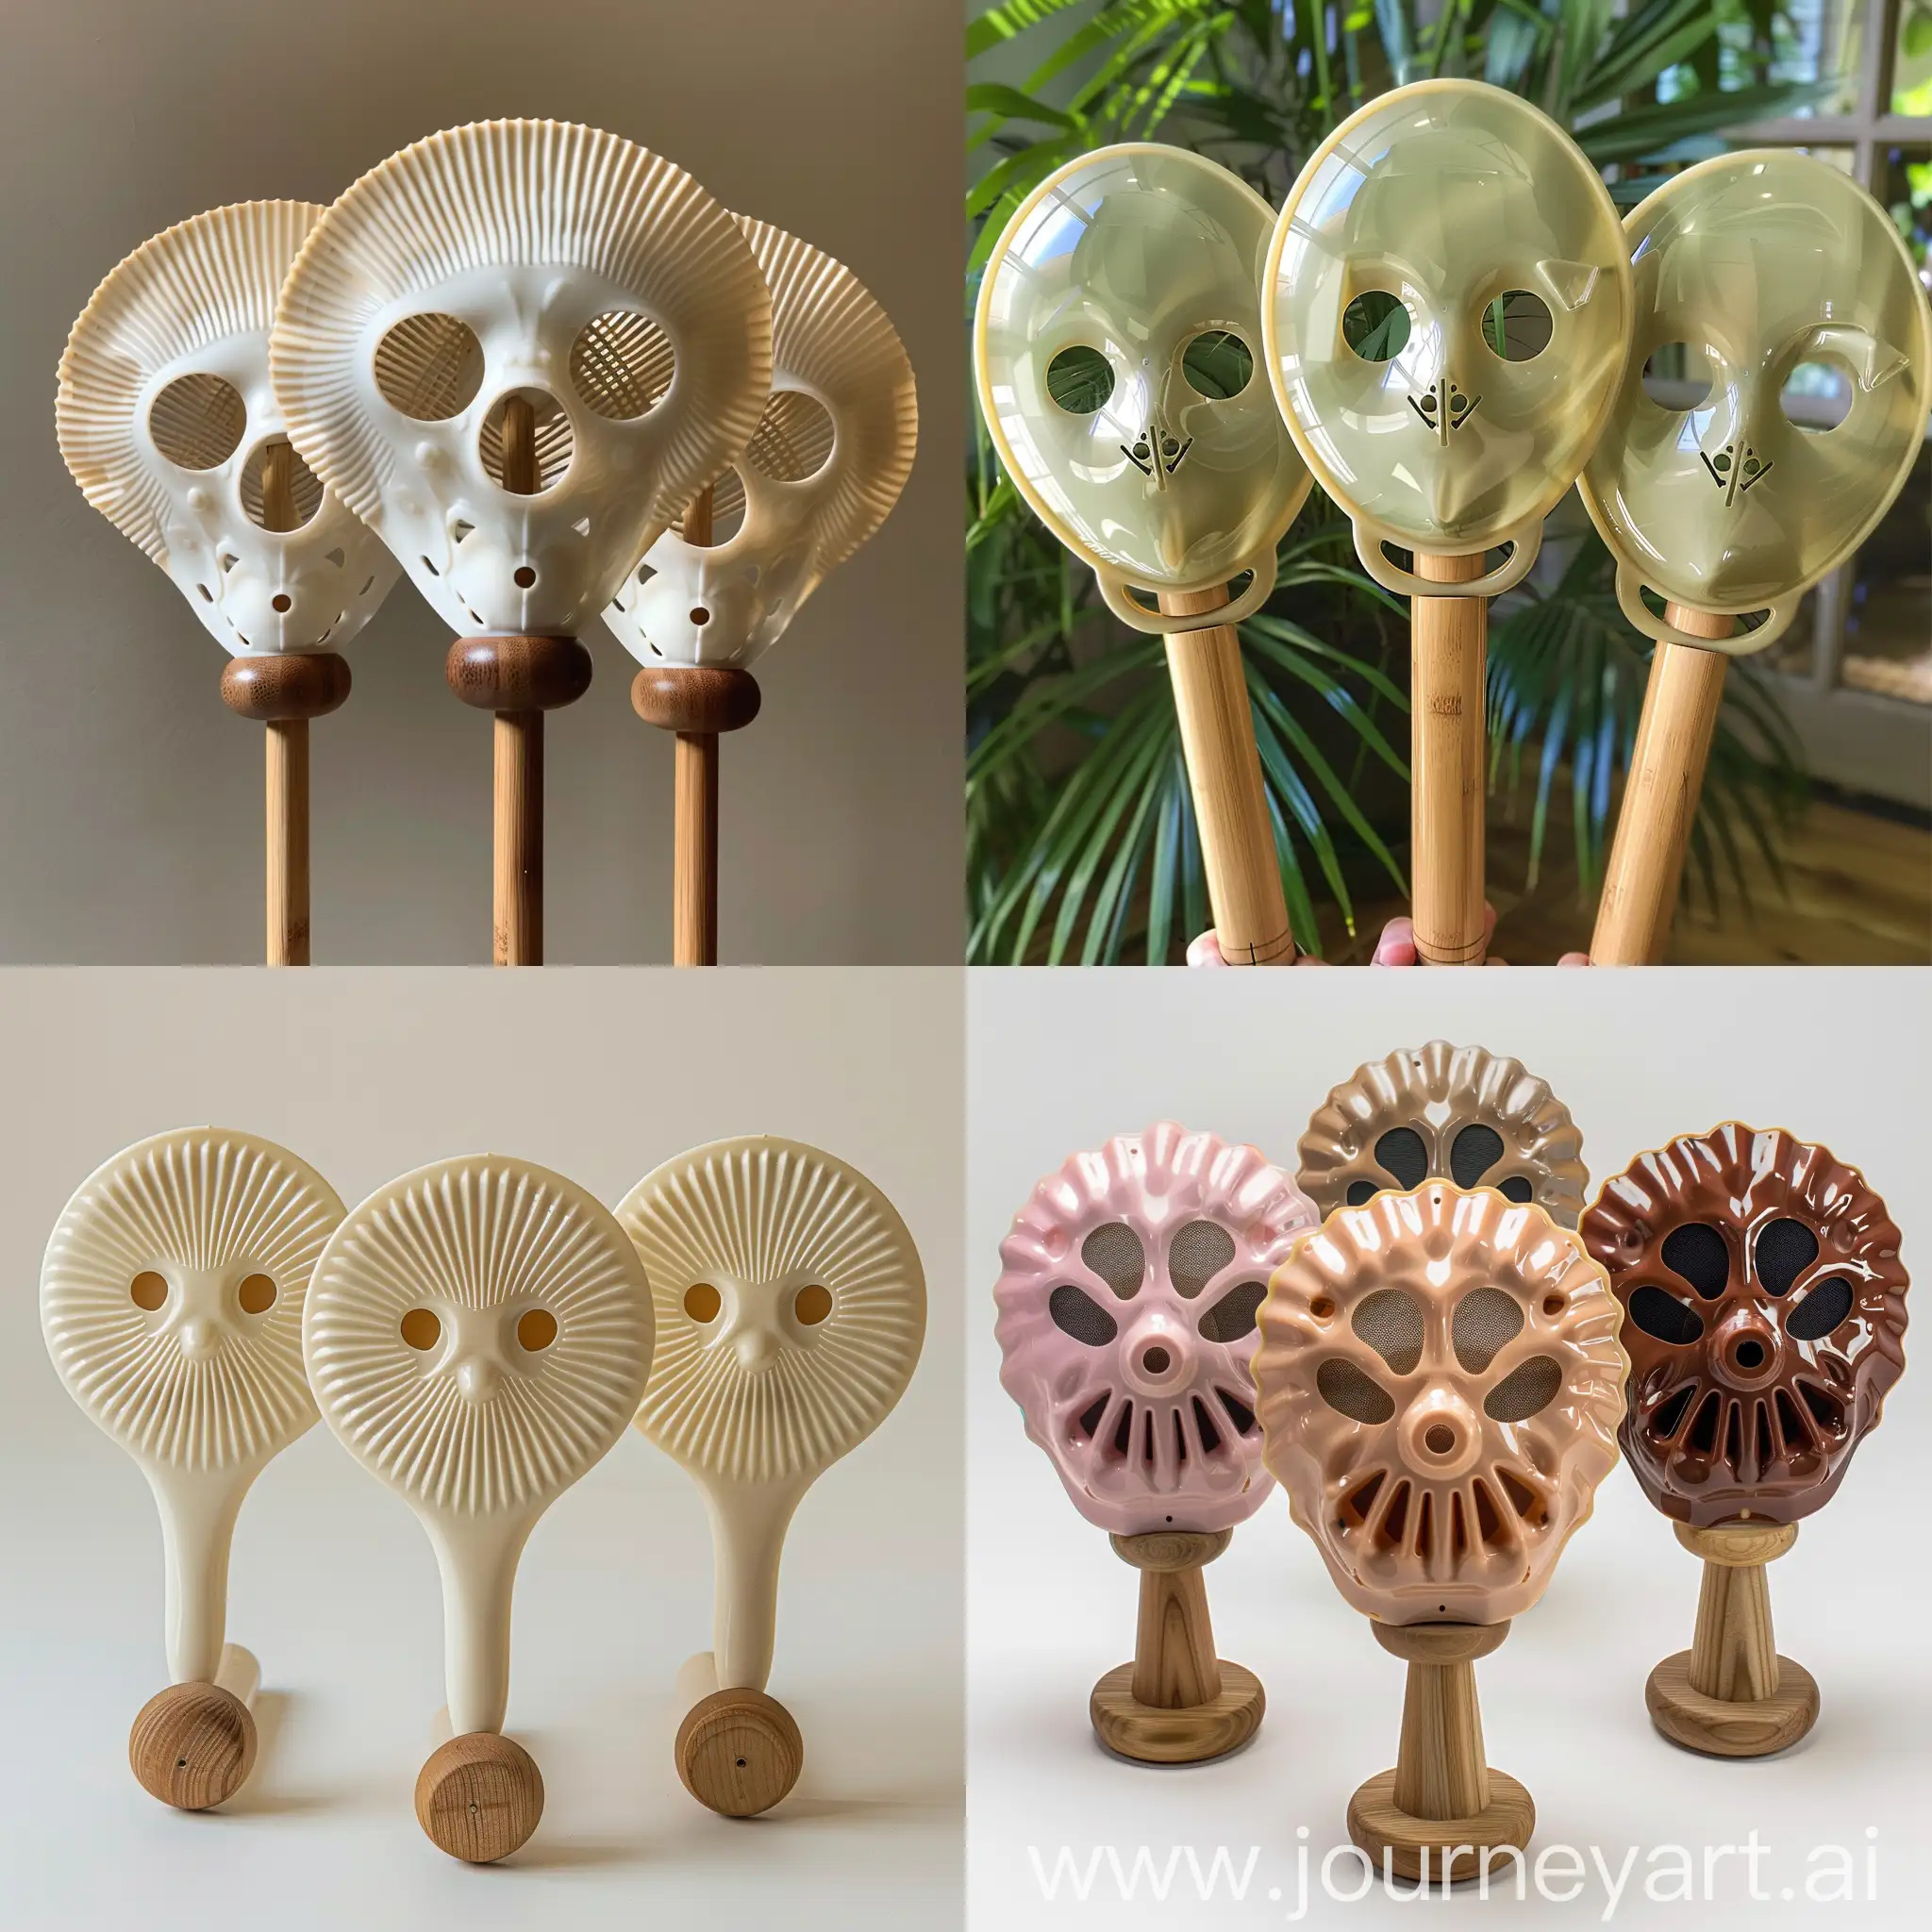 三把扇子，木质圆柄，扇面用塑料制成，形状是傩面具，面具的眼睛部分开孔，扇面大小跟人脸大小差不多